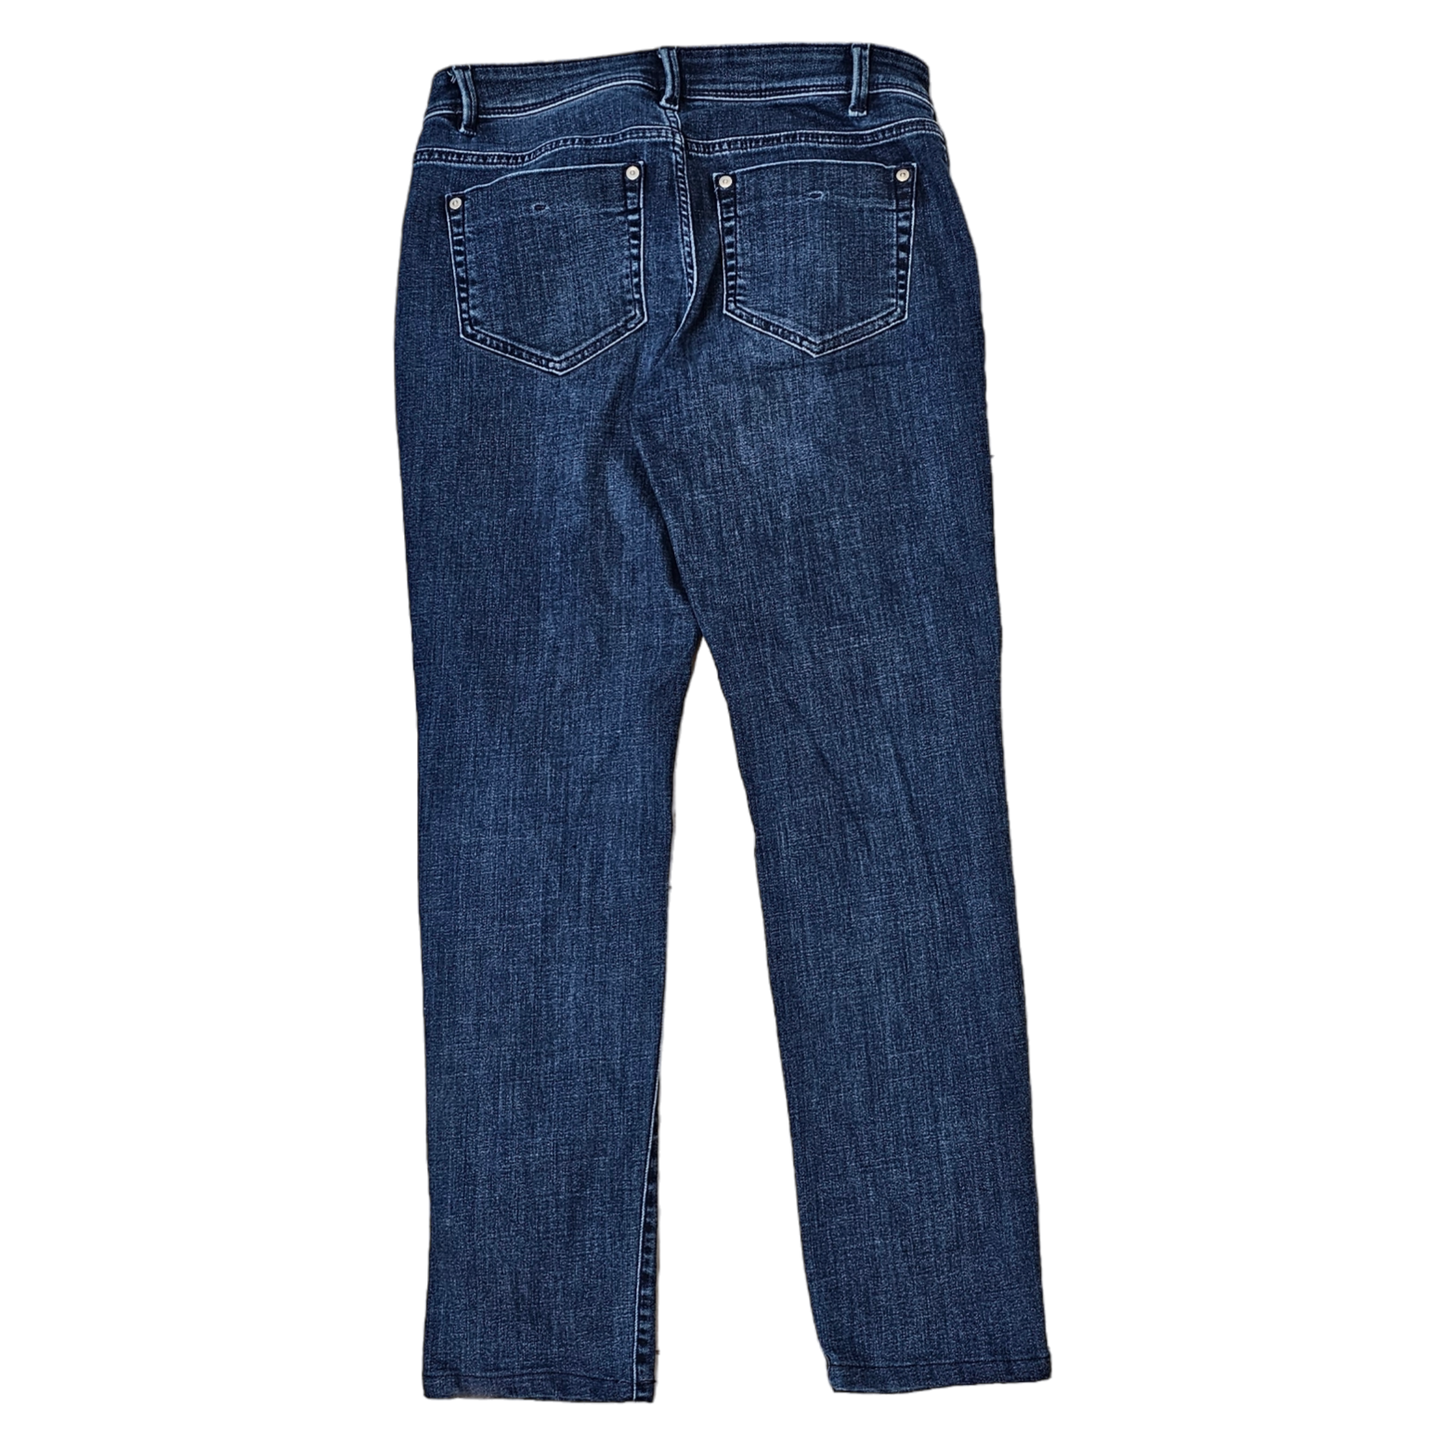 Jeans Skinny By J Jill  Size: 2